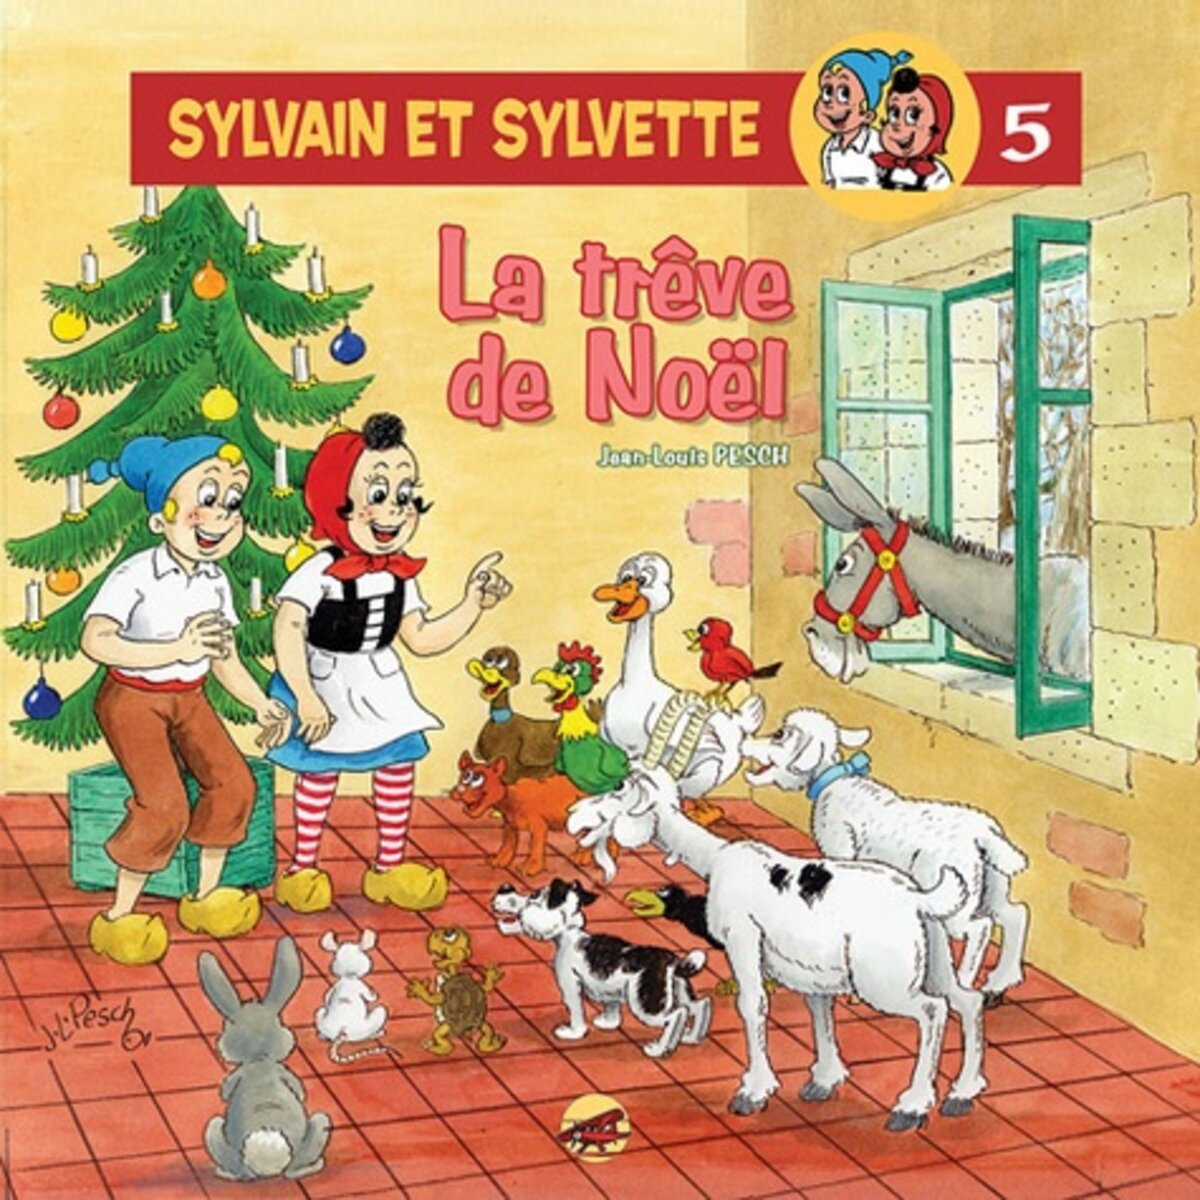  SYLVAIN ET SYLVETTE TOME 5 : LA TREVE DE NOEL, Pesch Jean-Louis